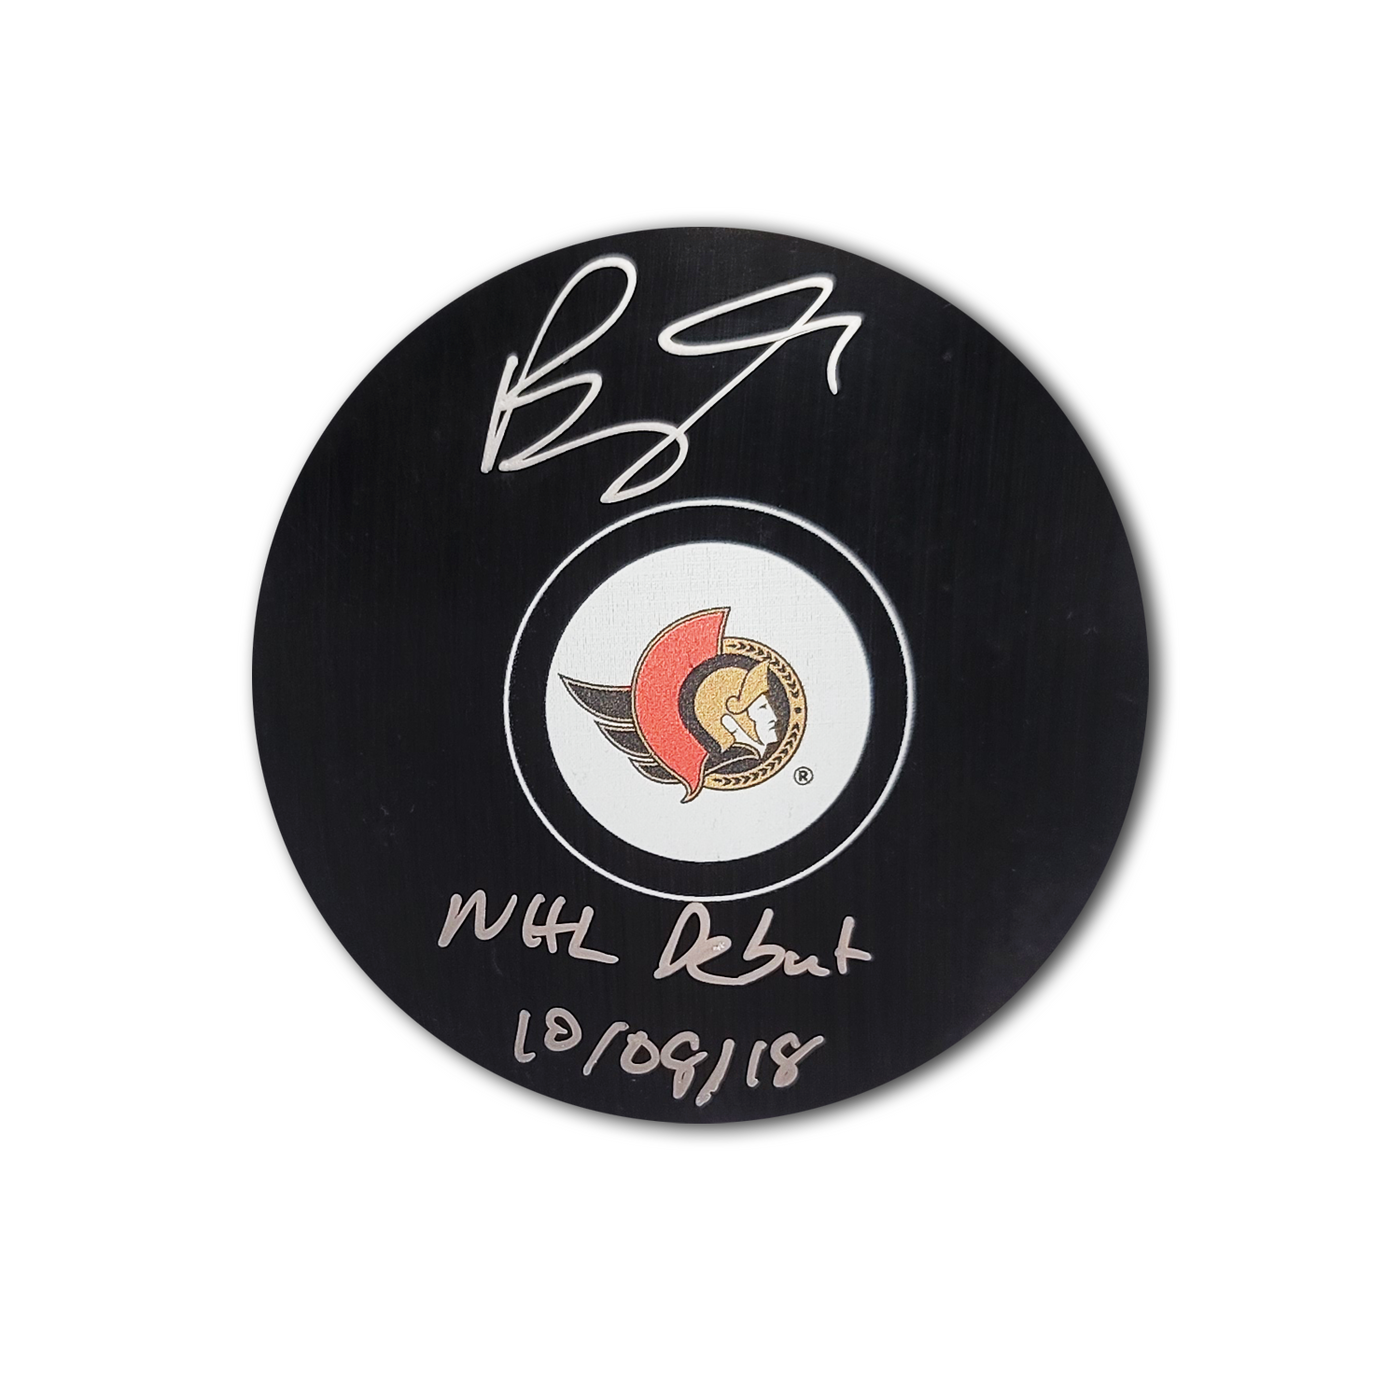 Brady Tkachuk Ottawa Senators Autographed Hockey Puck Inscribed NHL Debut 10/08/18